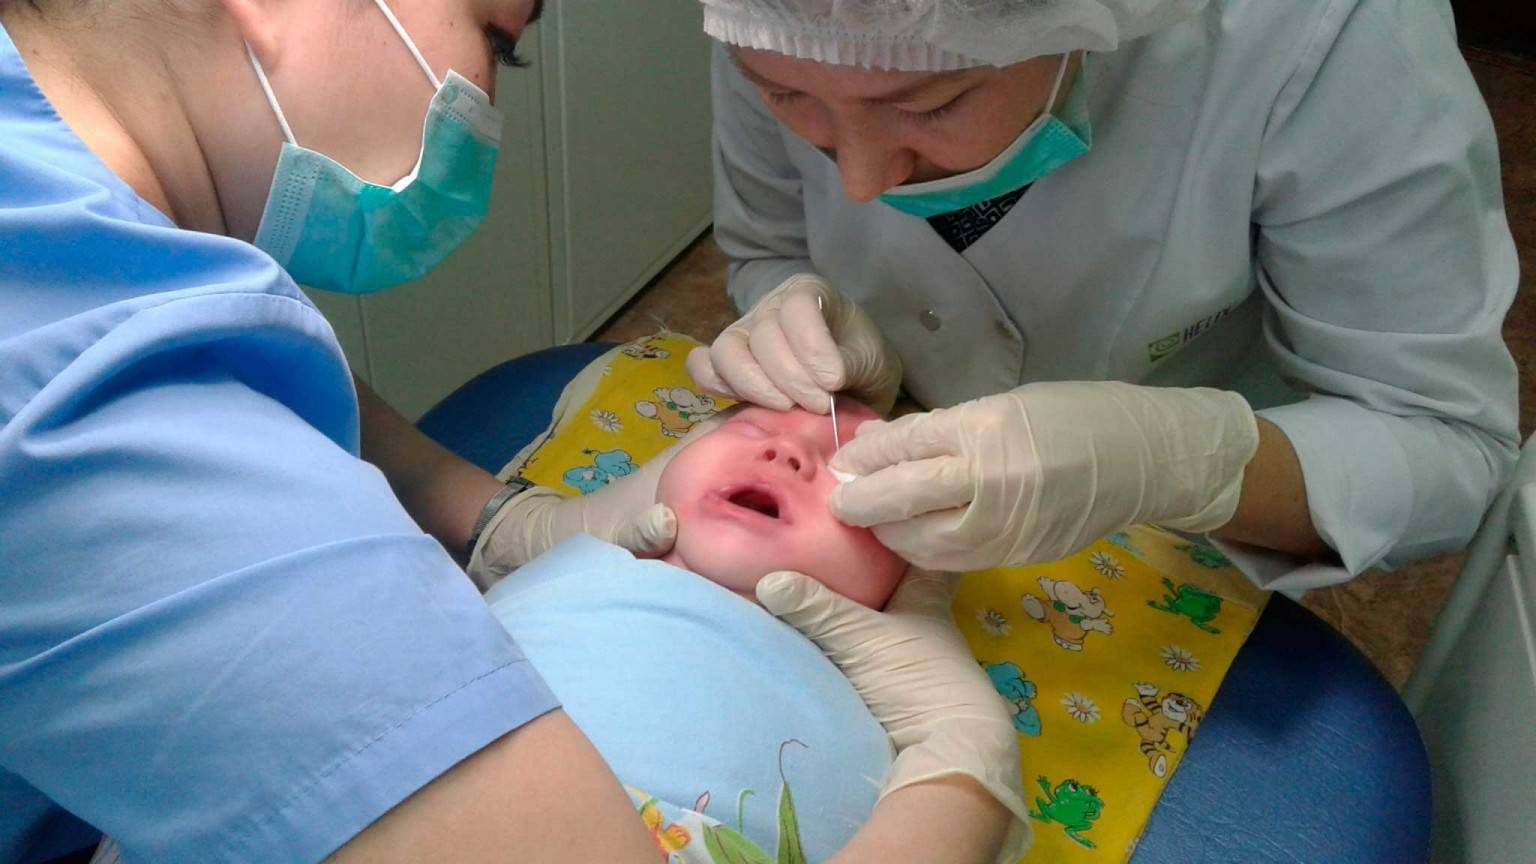 Показания для проведения зондирования слезного канала у новорожденных и последствия